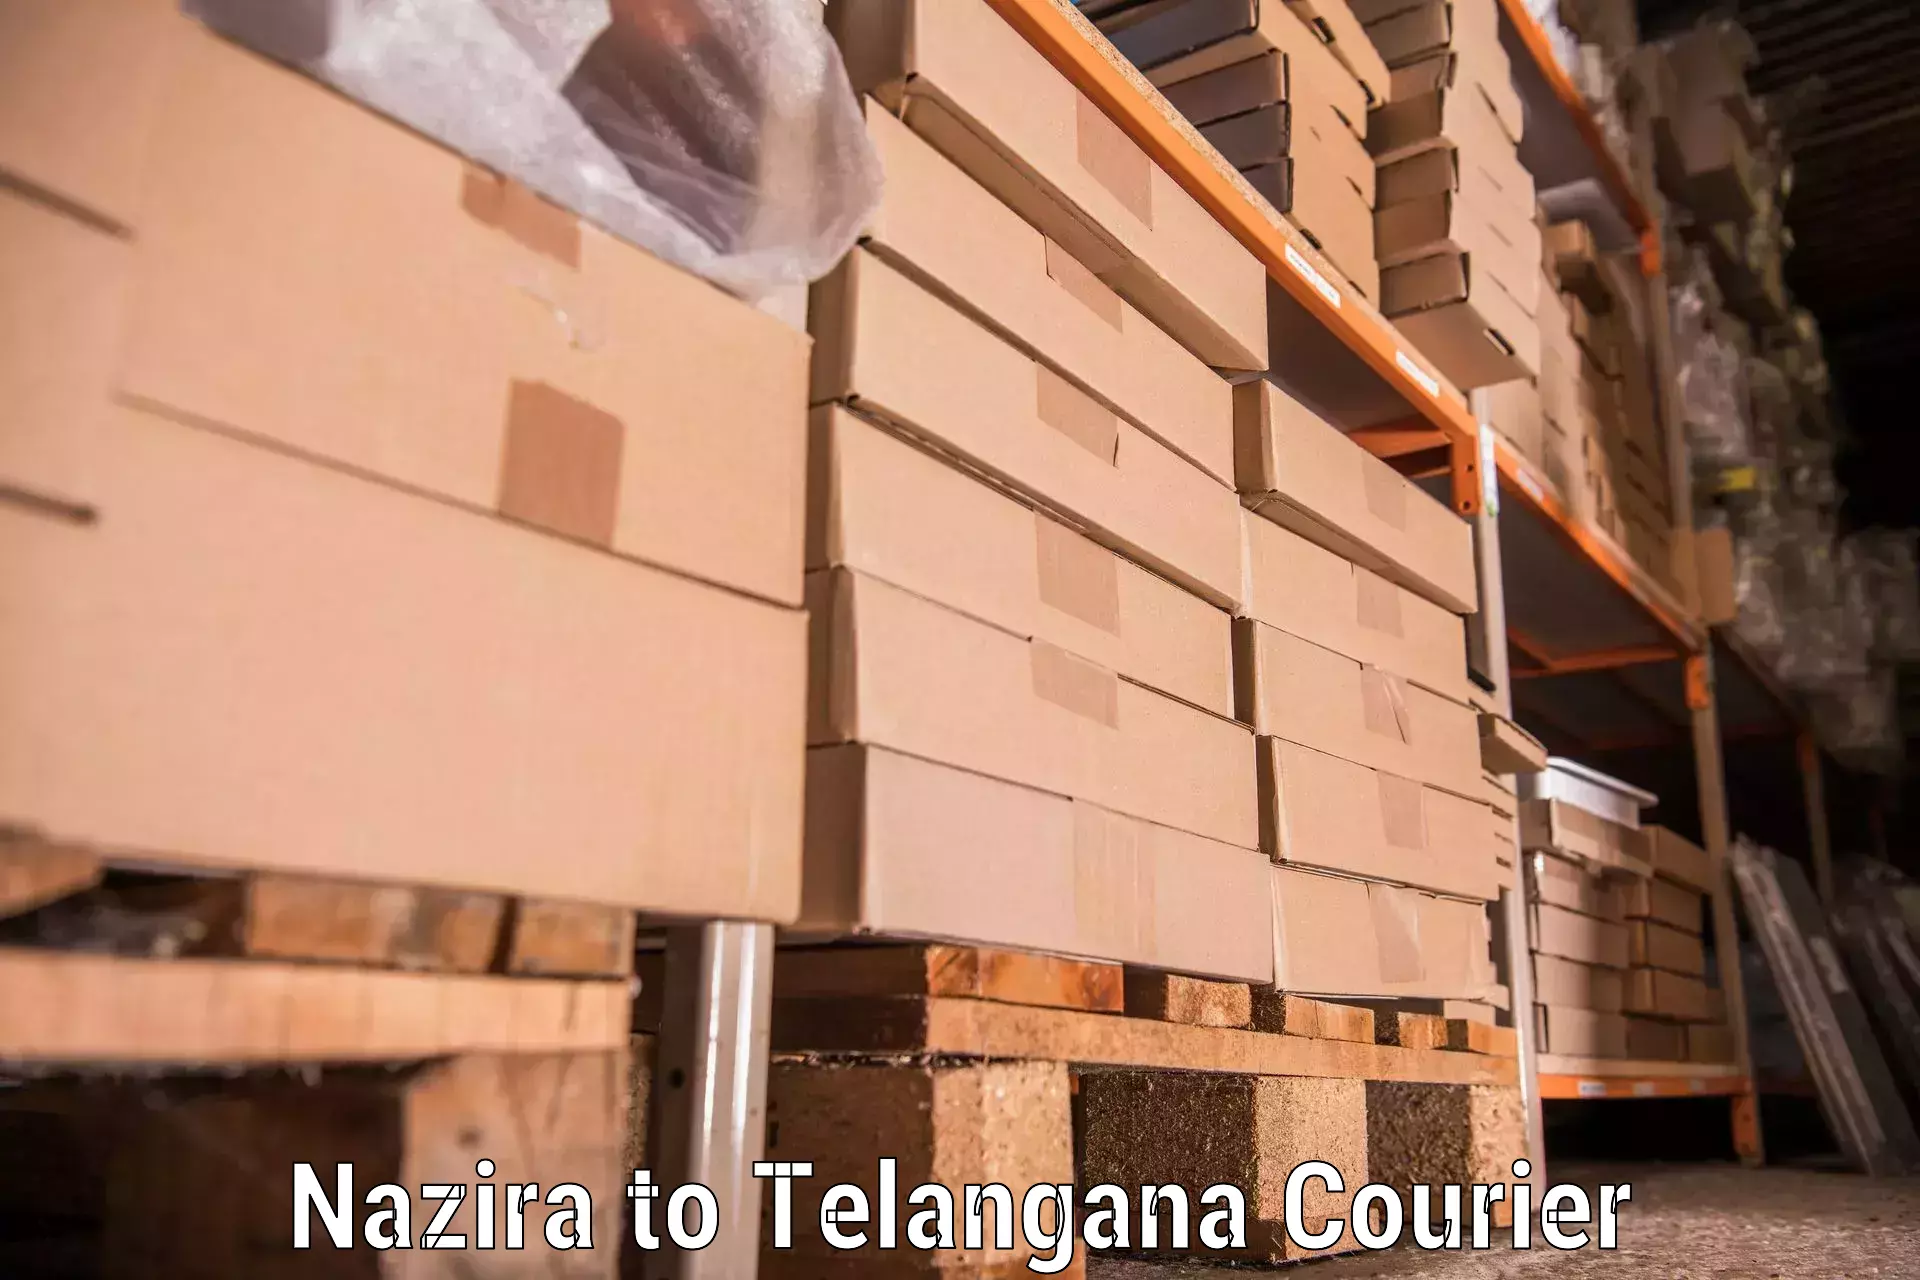 Furniture moving experts Nazira to Bellal Tarafa Bodhan